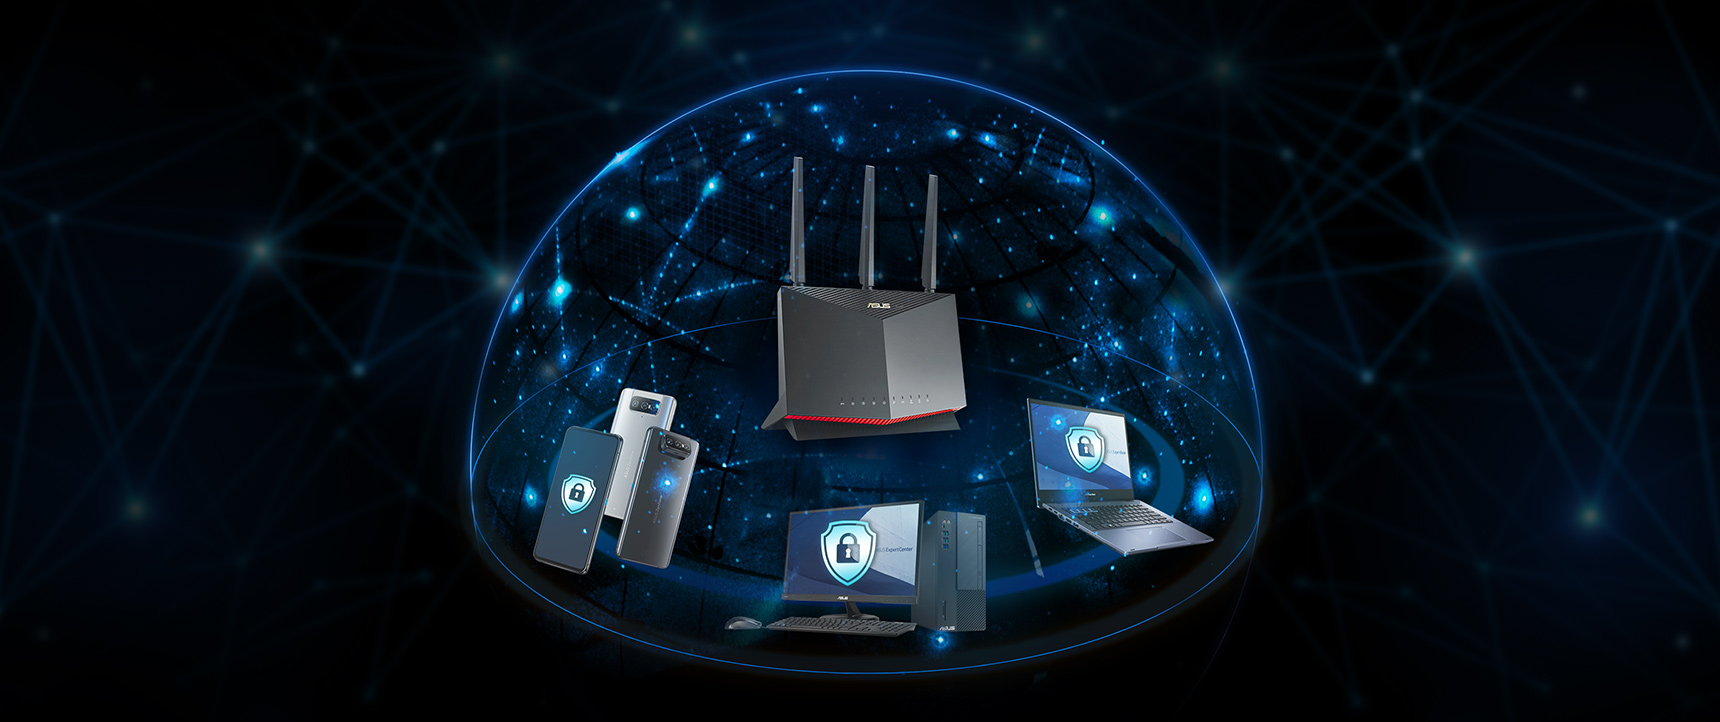 Sebagian besar router ASUS memiliki teknologi AiProtection yang didukung oleh Trend Micro™, yang memastikan bahwa setiap perangkat di jaringan bisnis Anda terlindungi